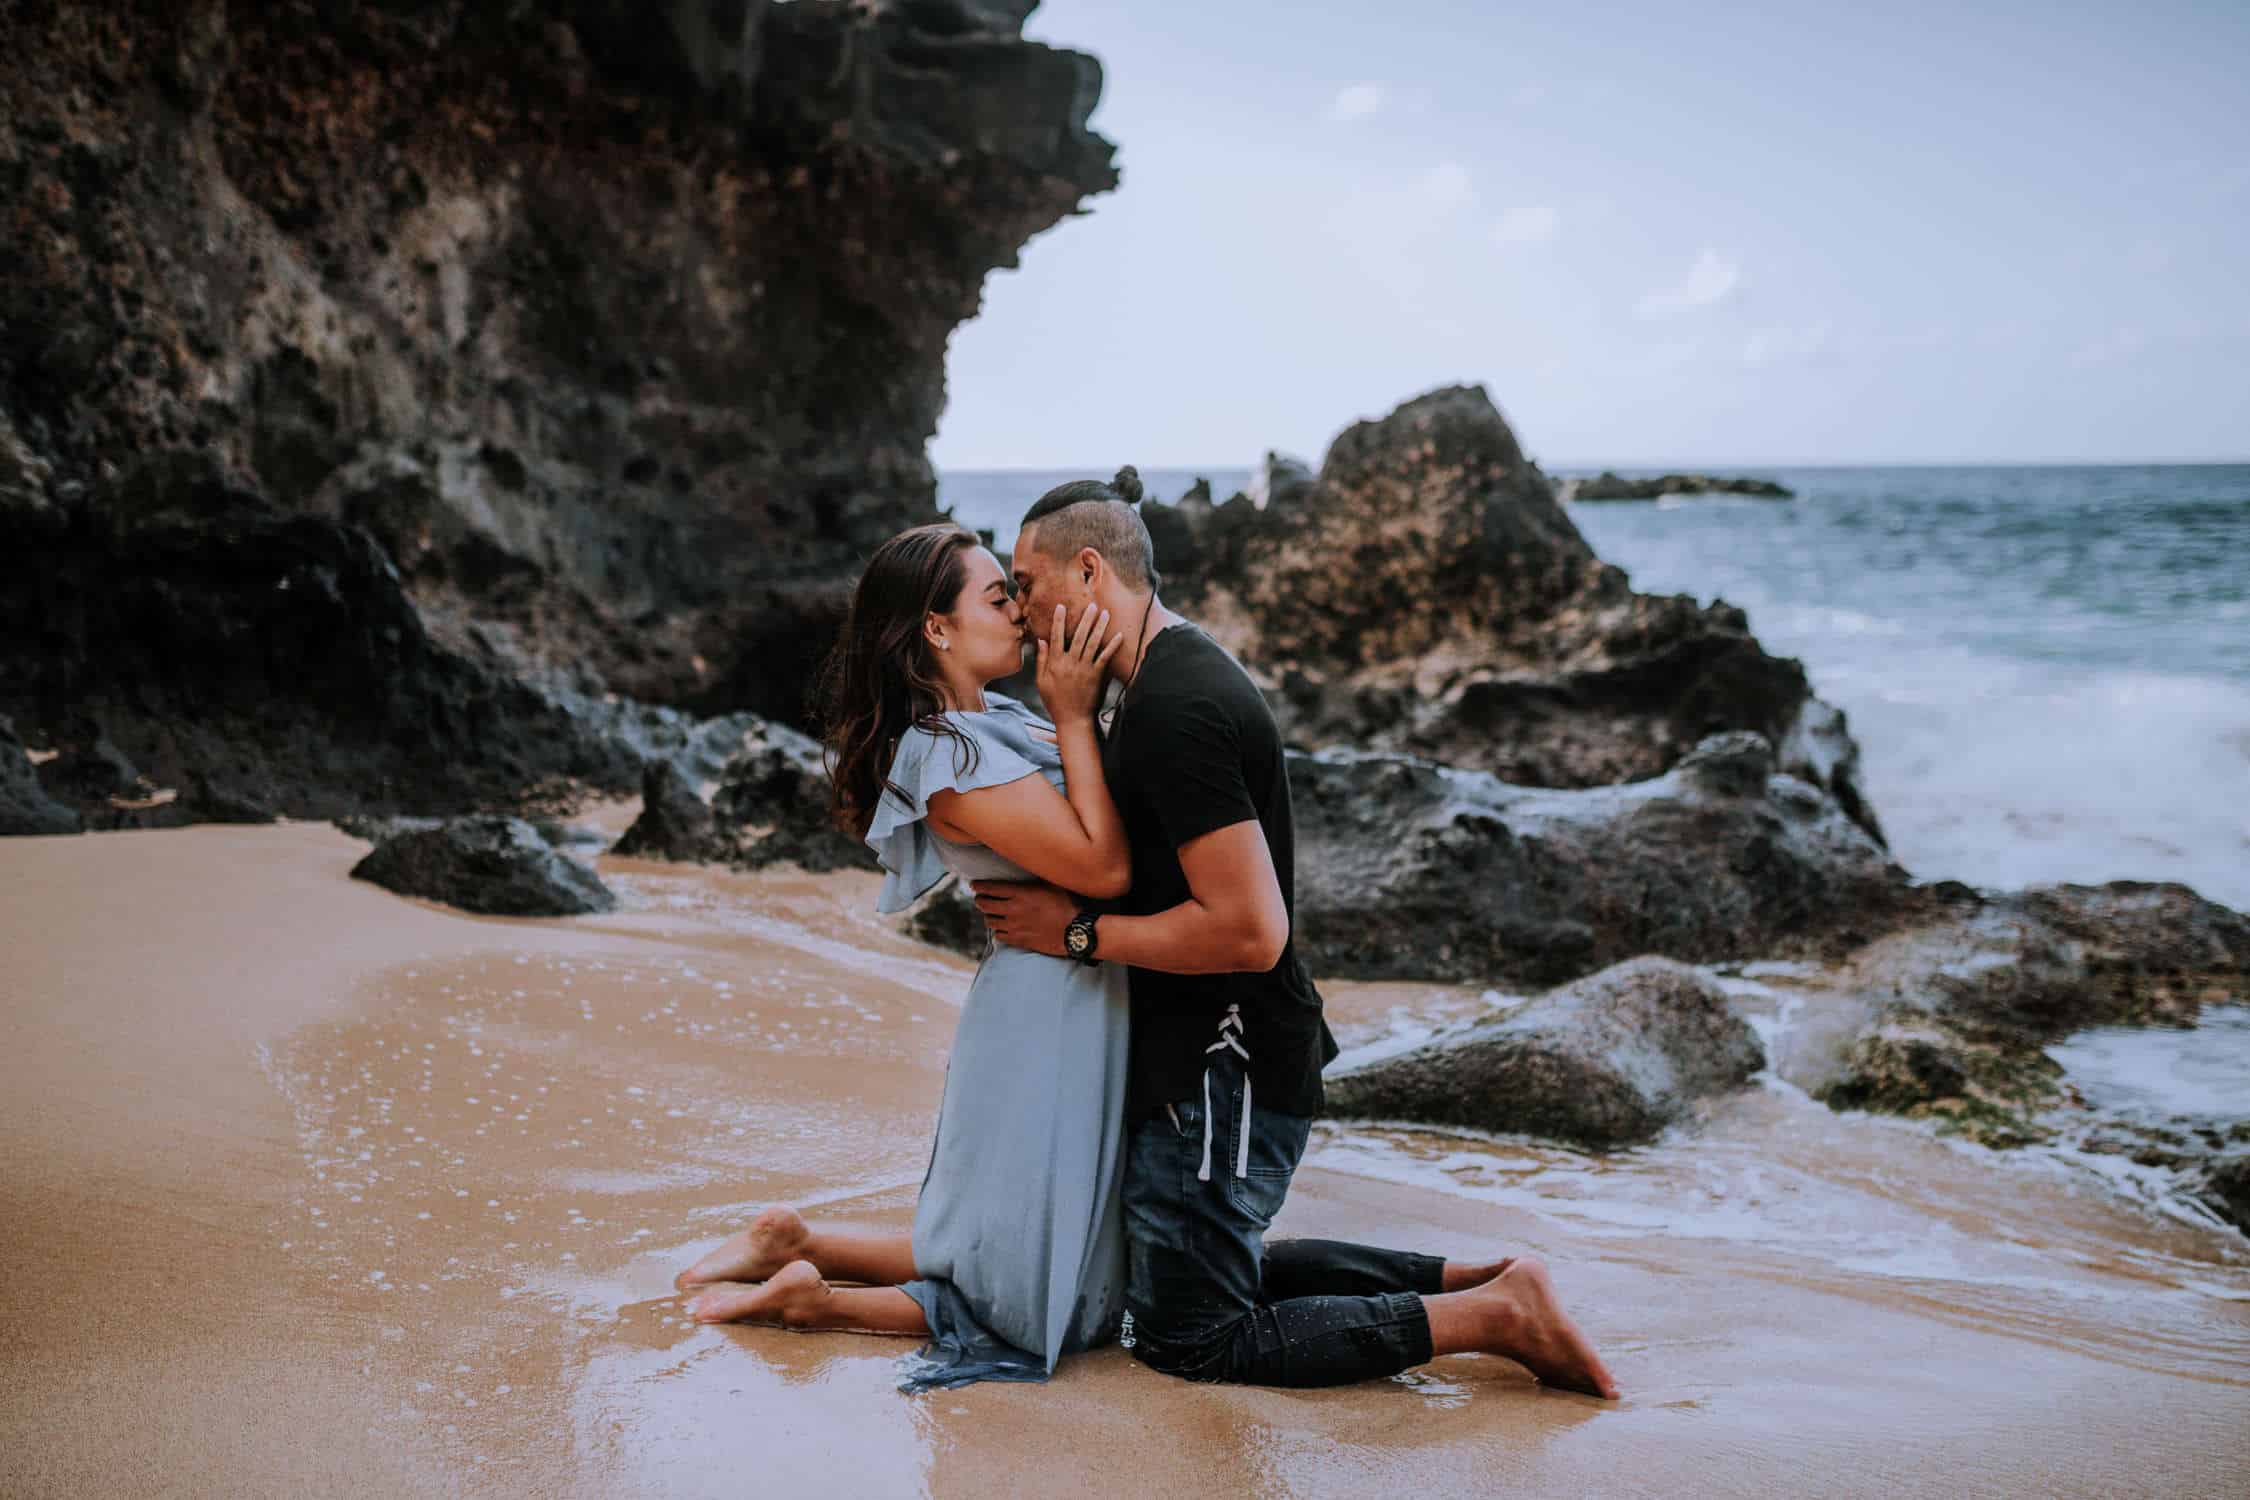 Engagement session on the coast of Oahu, Hawaii at Waimea Bay by Anela Benavides